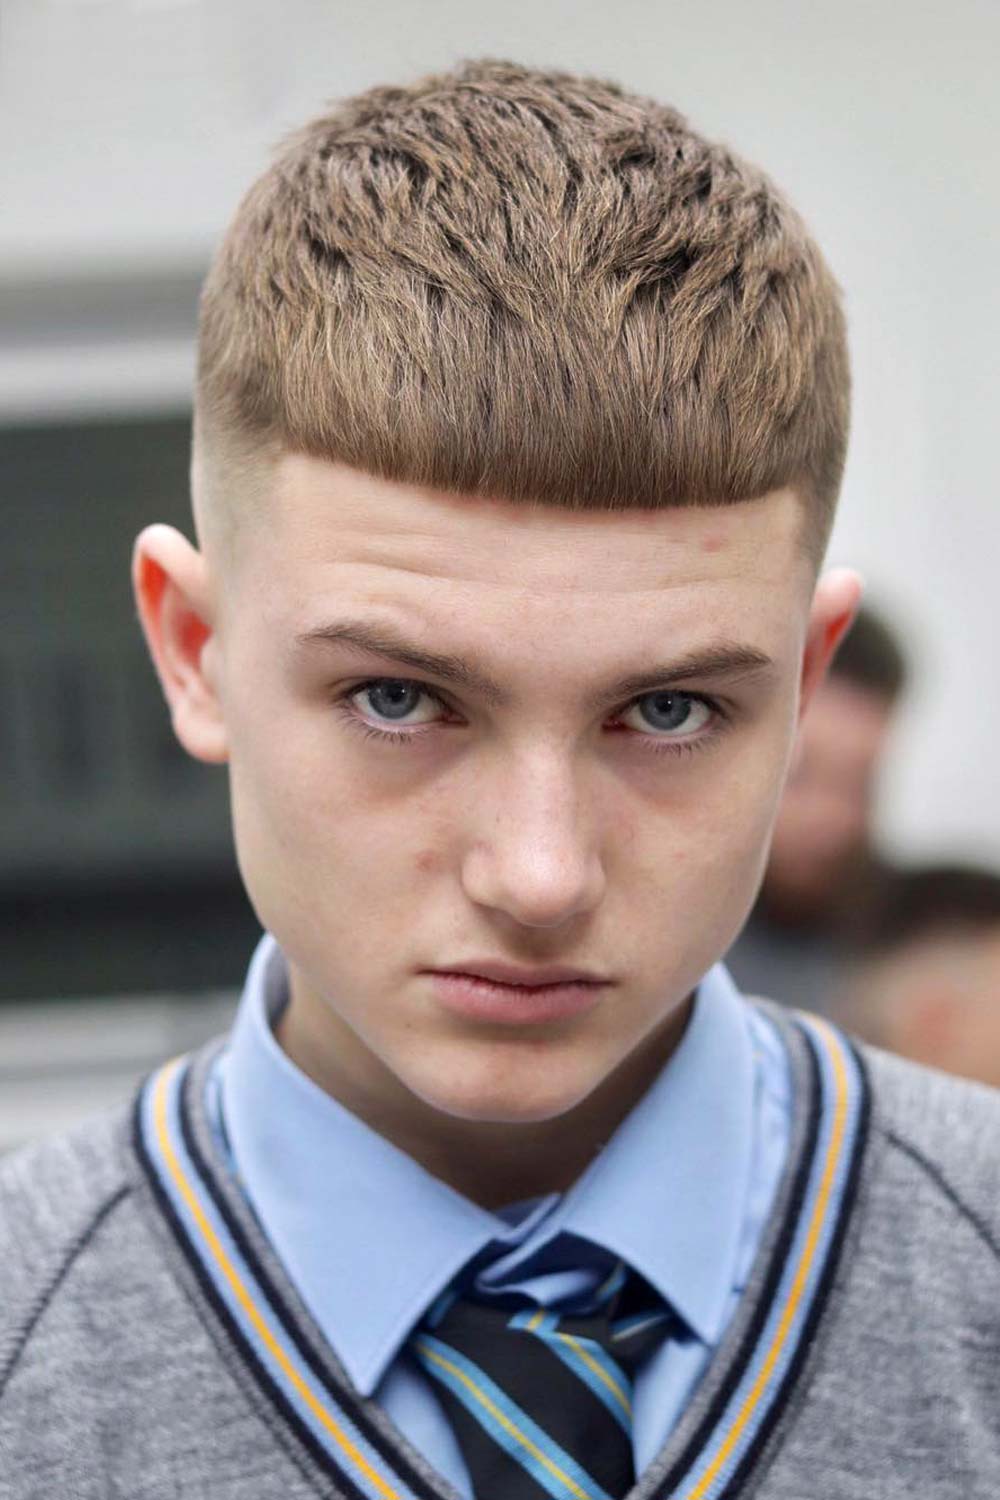 Edgar Haircut for Teen Boy #tennyboyhaircut #teenagehairstyle